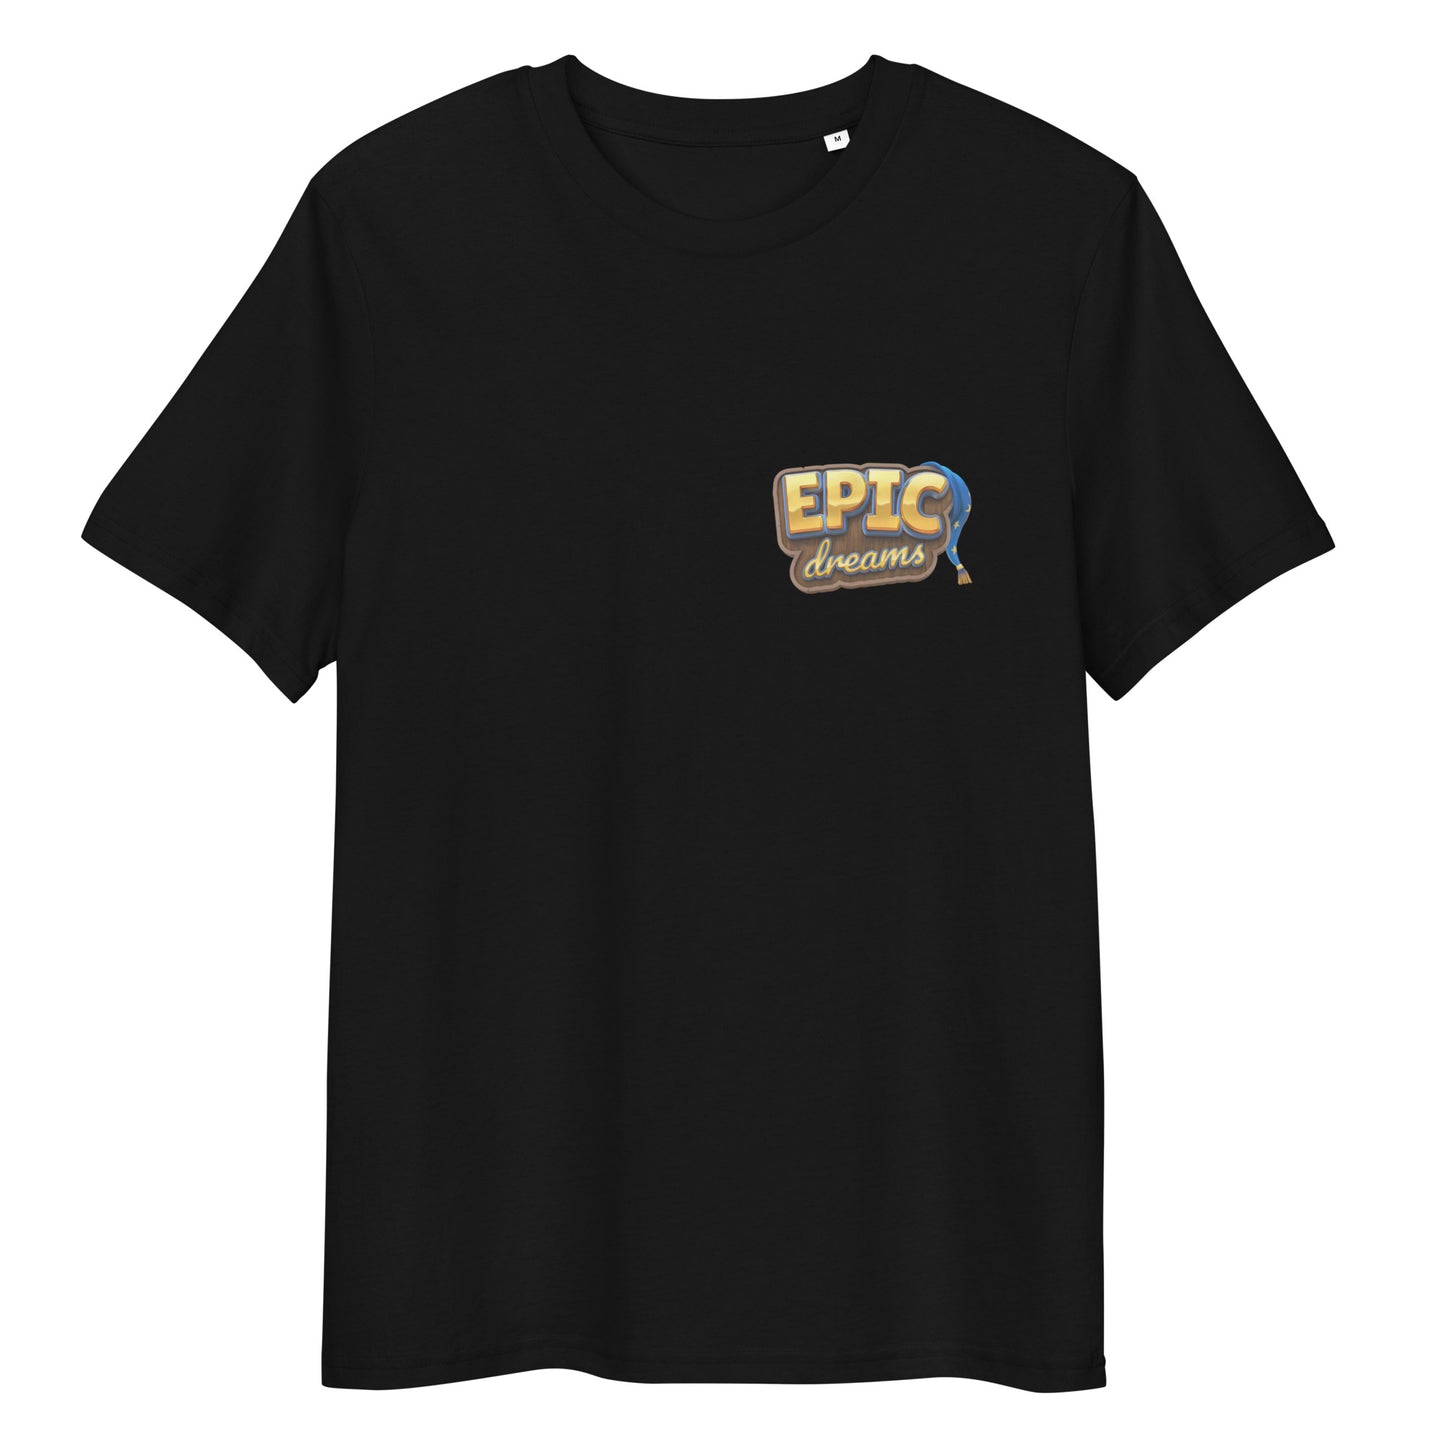 EPIC DREAMS cotton t-shirt